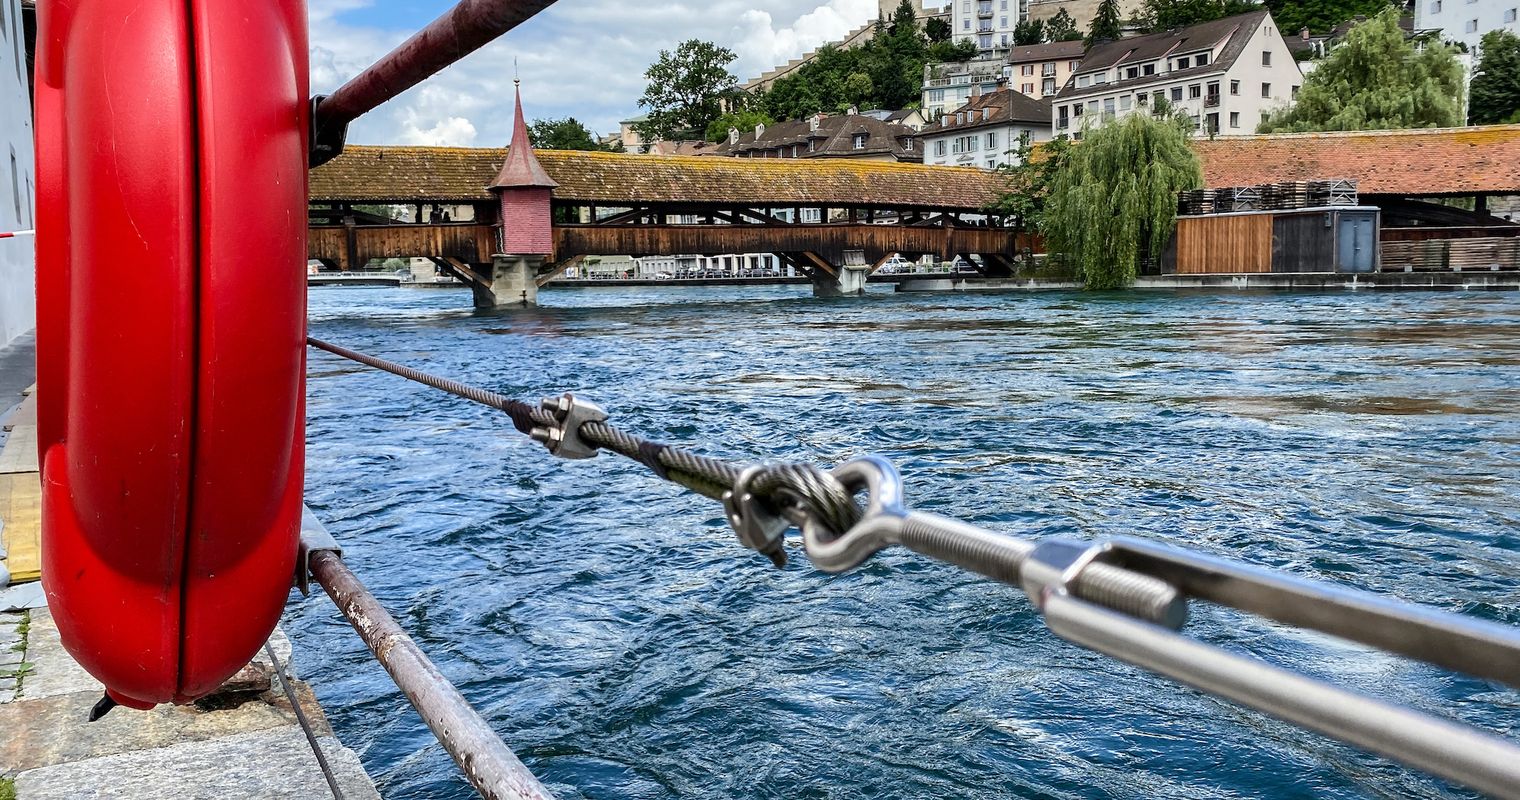 Einbruch bei der Spreuerbrücke in Luzern